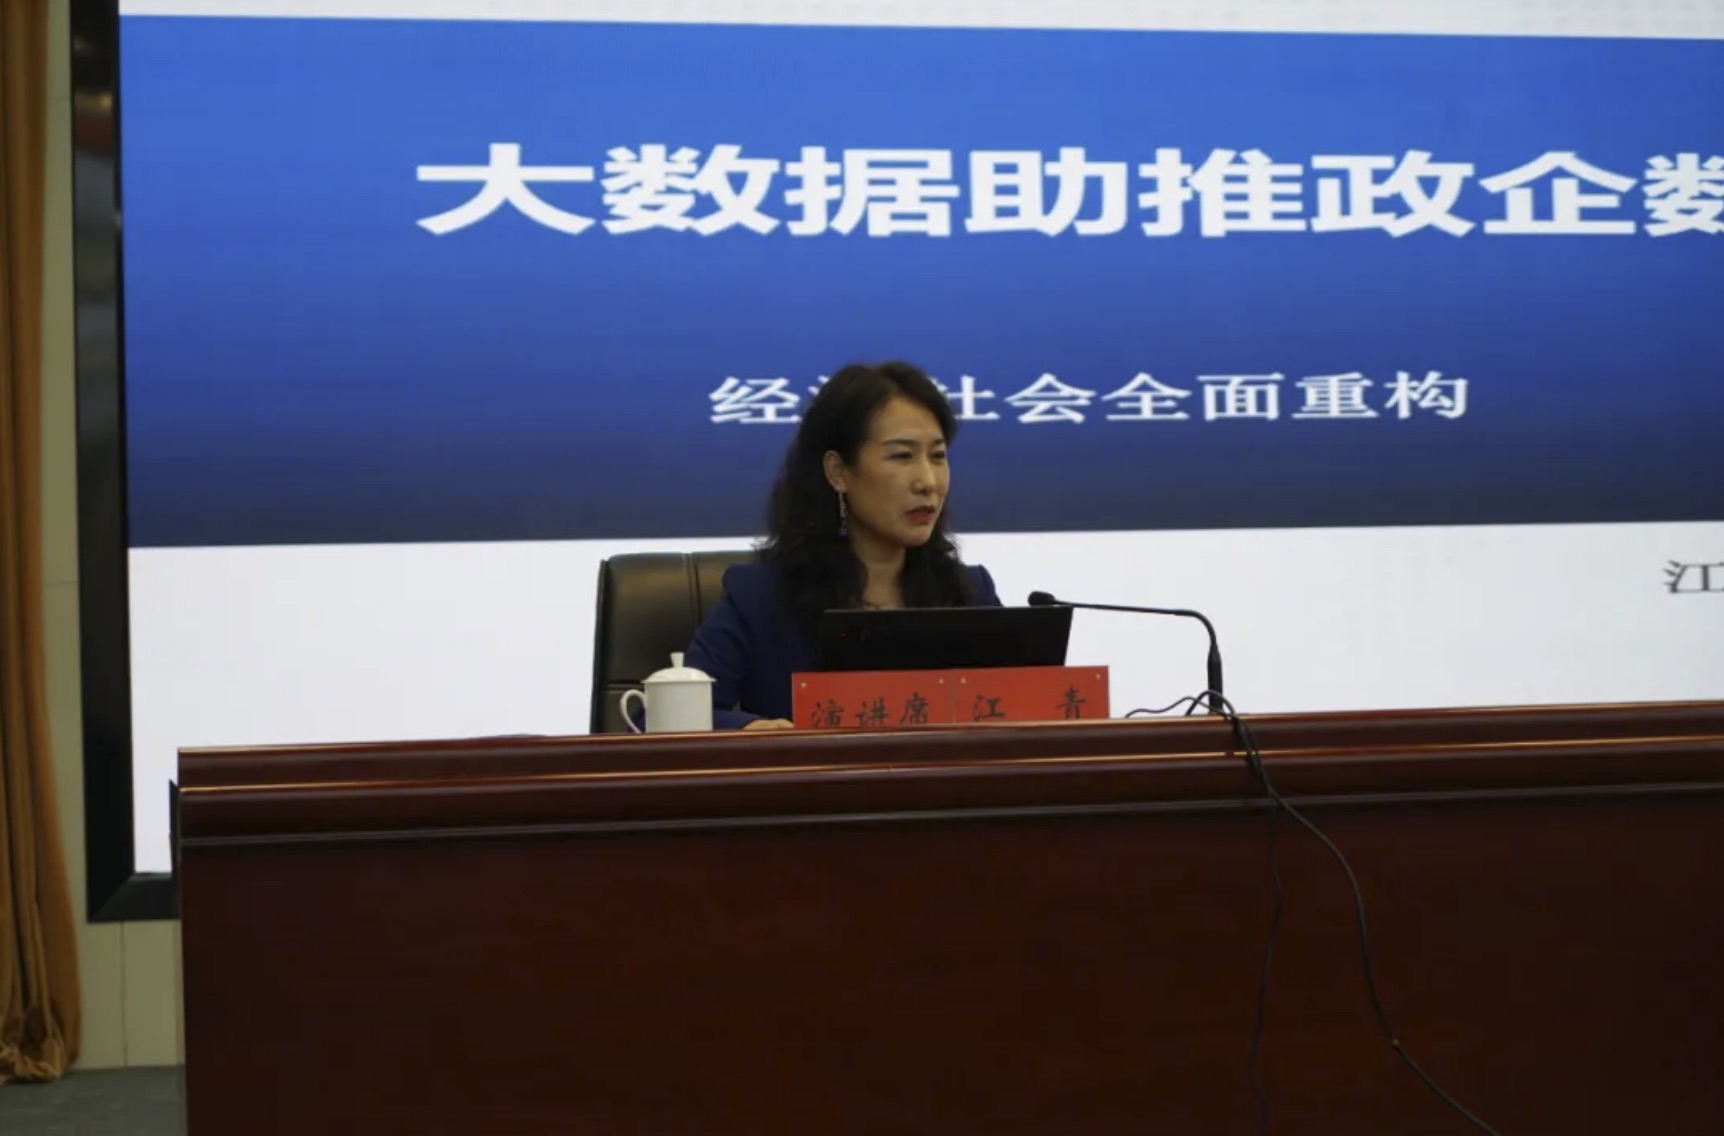 隴南市邀請中國教育大數據研究院副院長、中國（西安）絲綢之路研究院一帶一路大數據中心研究員江青